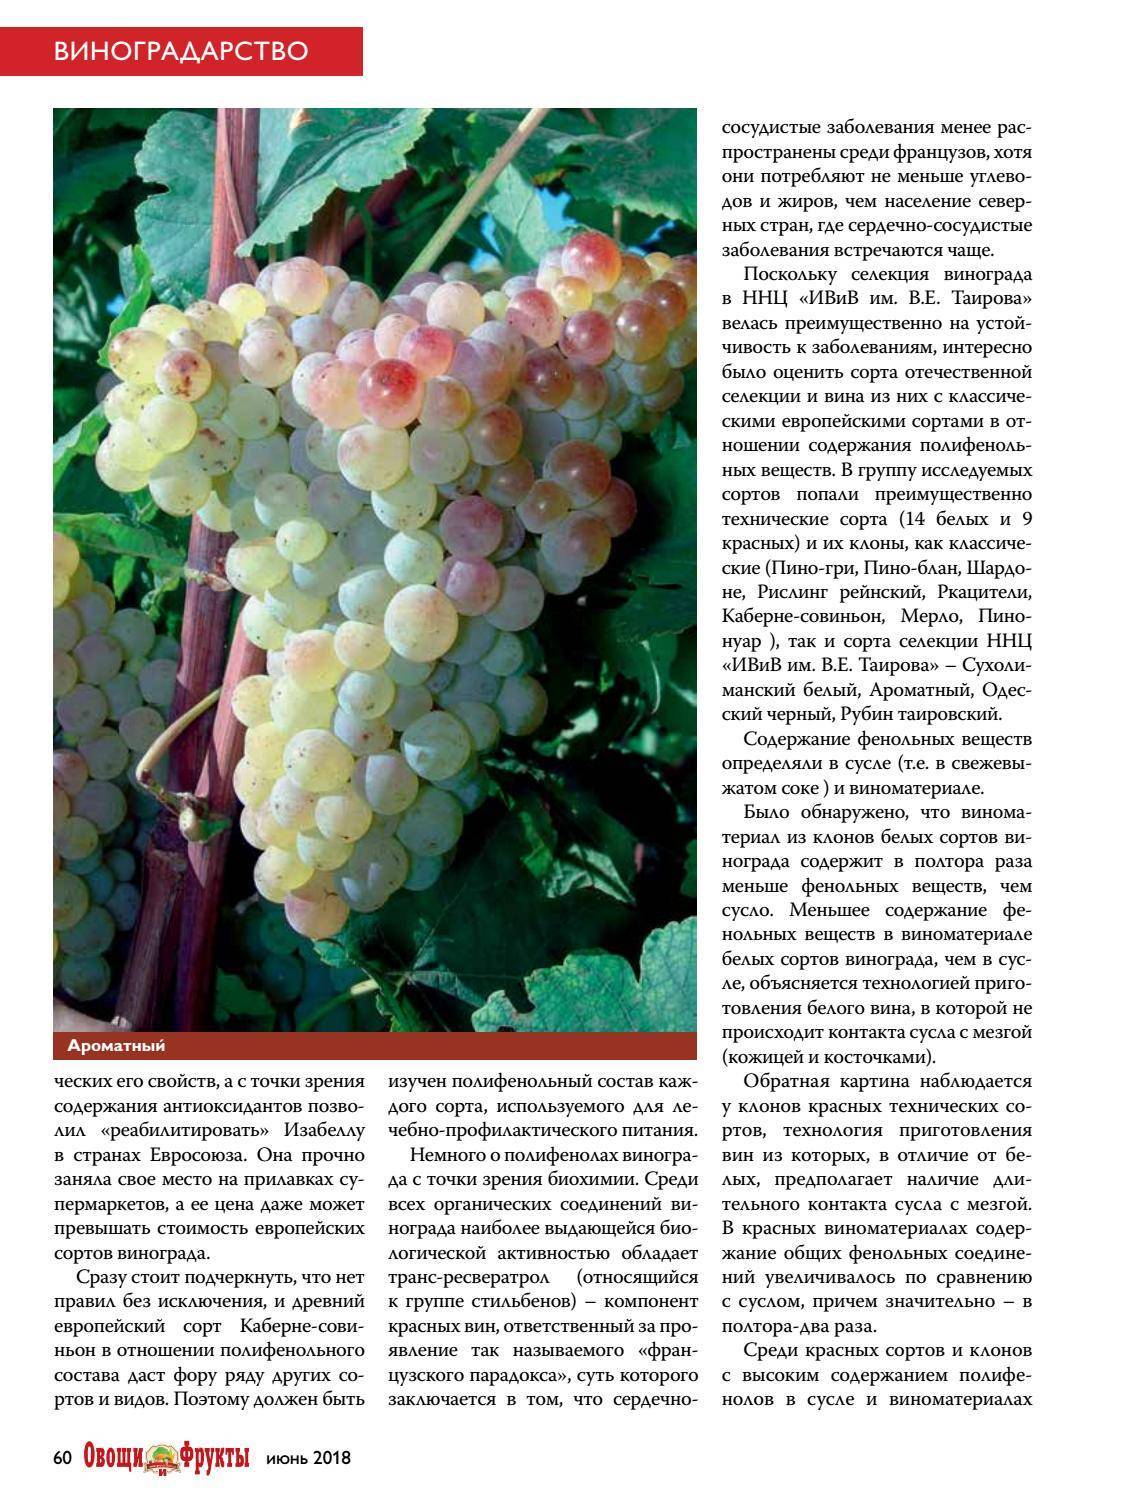 Пино гриджио и пино гри: описание сорта винограда, виды вина, сочетания вина с едой